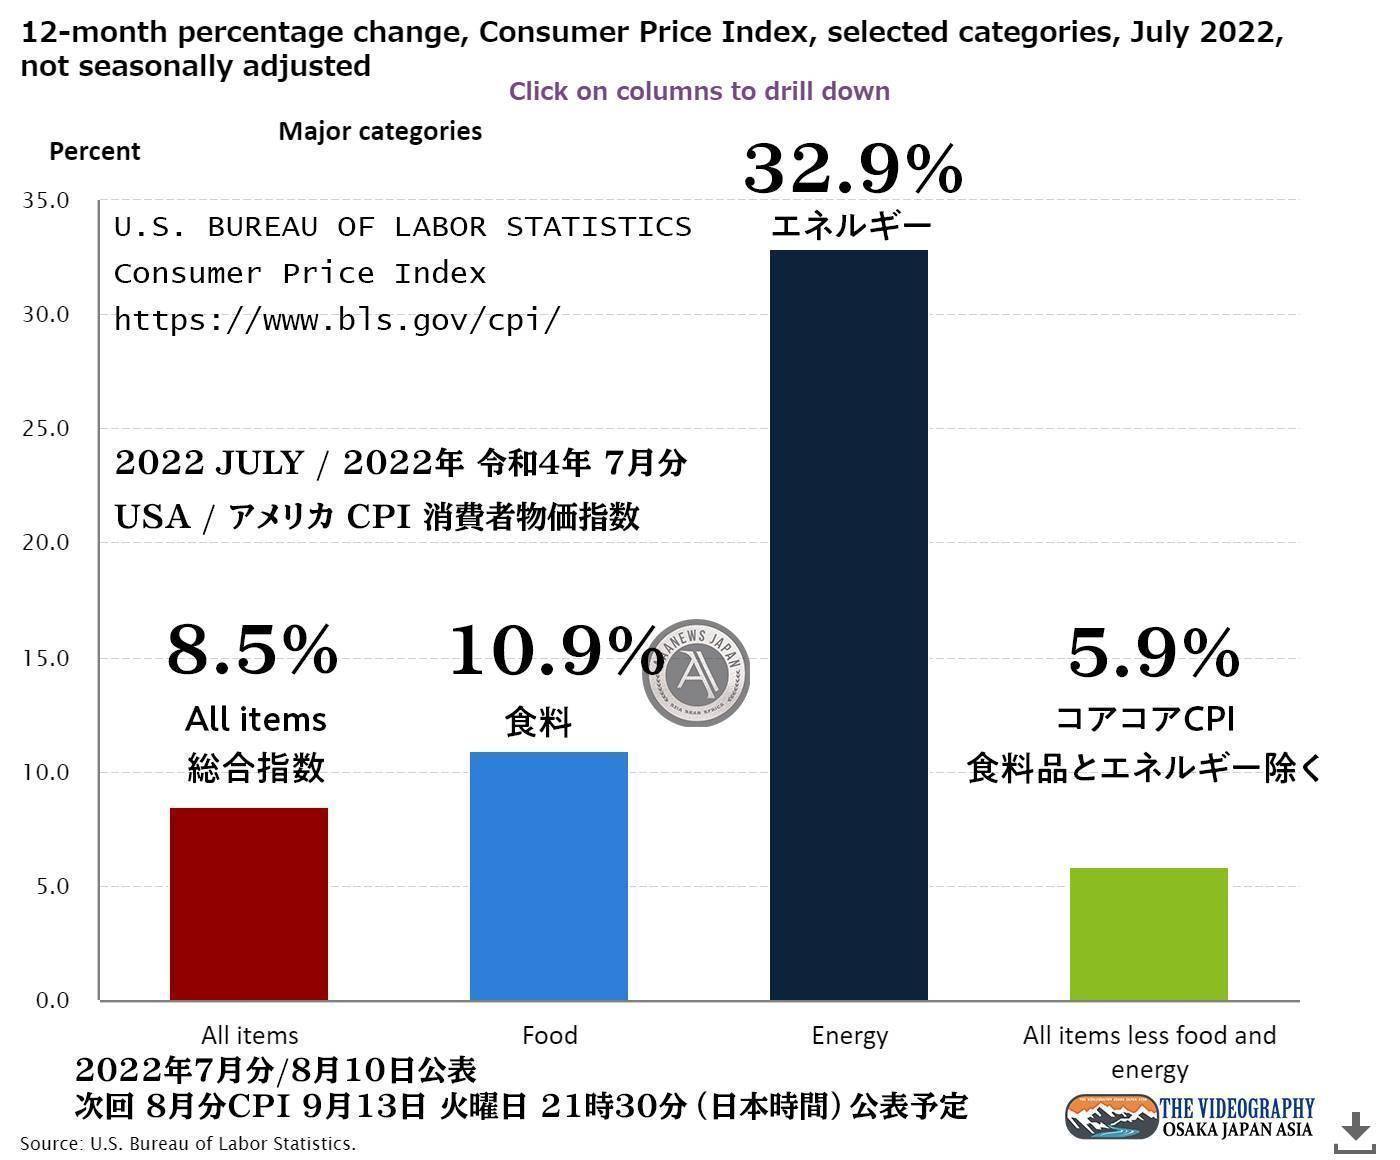 アメリカ 消費者物価指数 CPI CONSUMER PRICE INDEX - JULY 2022 . 総合指数 All items 8.5% 食料 Food 10.9％ エネルギー Energy 32.9％ コアコアCPI（食料品とエネルギーを除く・All items less food and energy index） 5.9% 